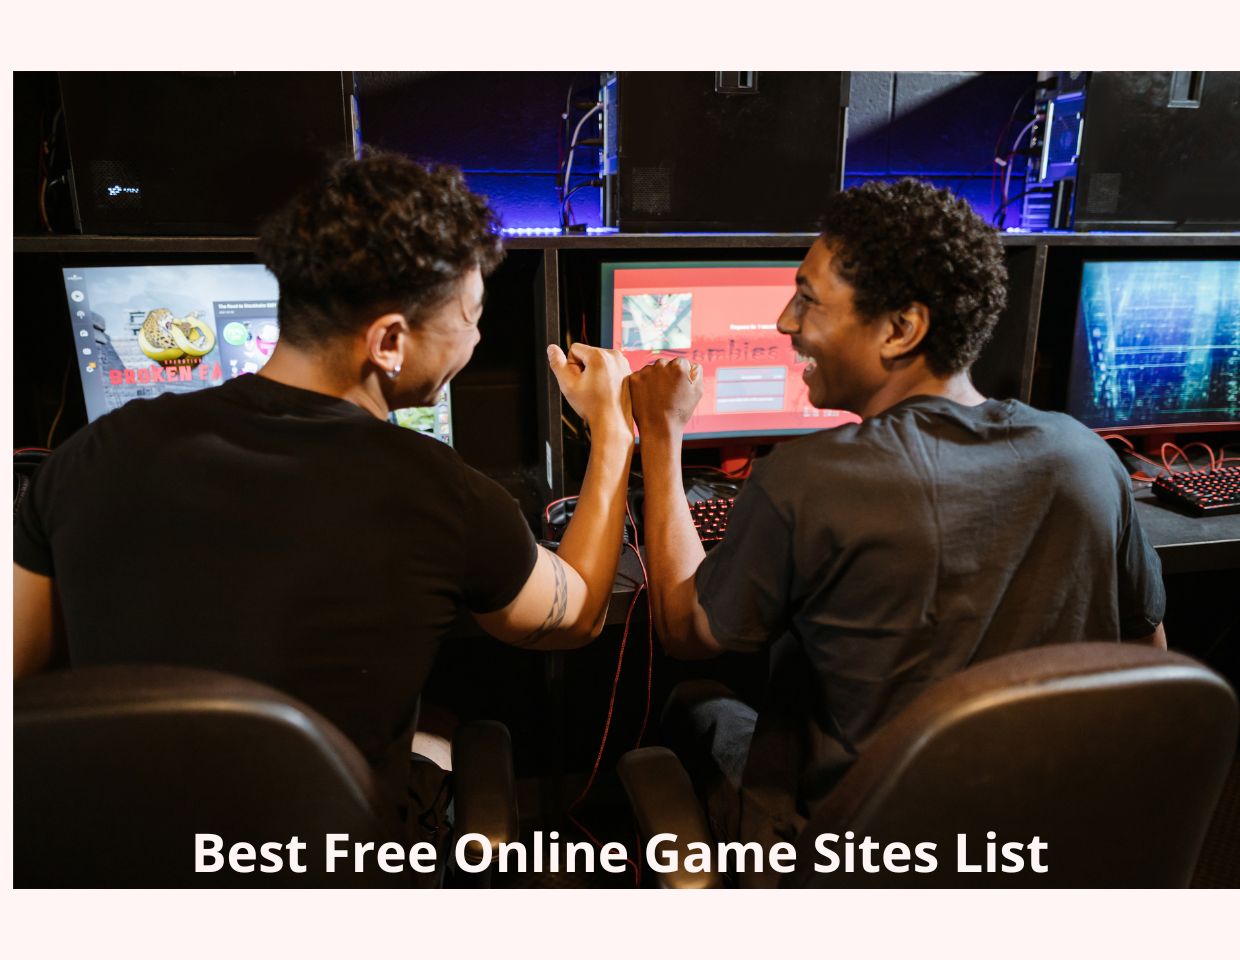 20 Best Free Online Game Sites List